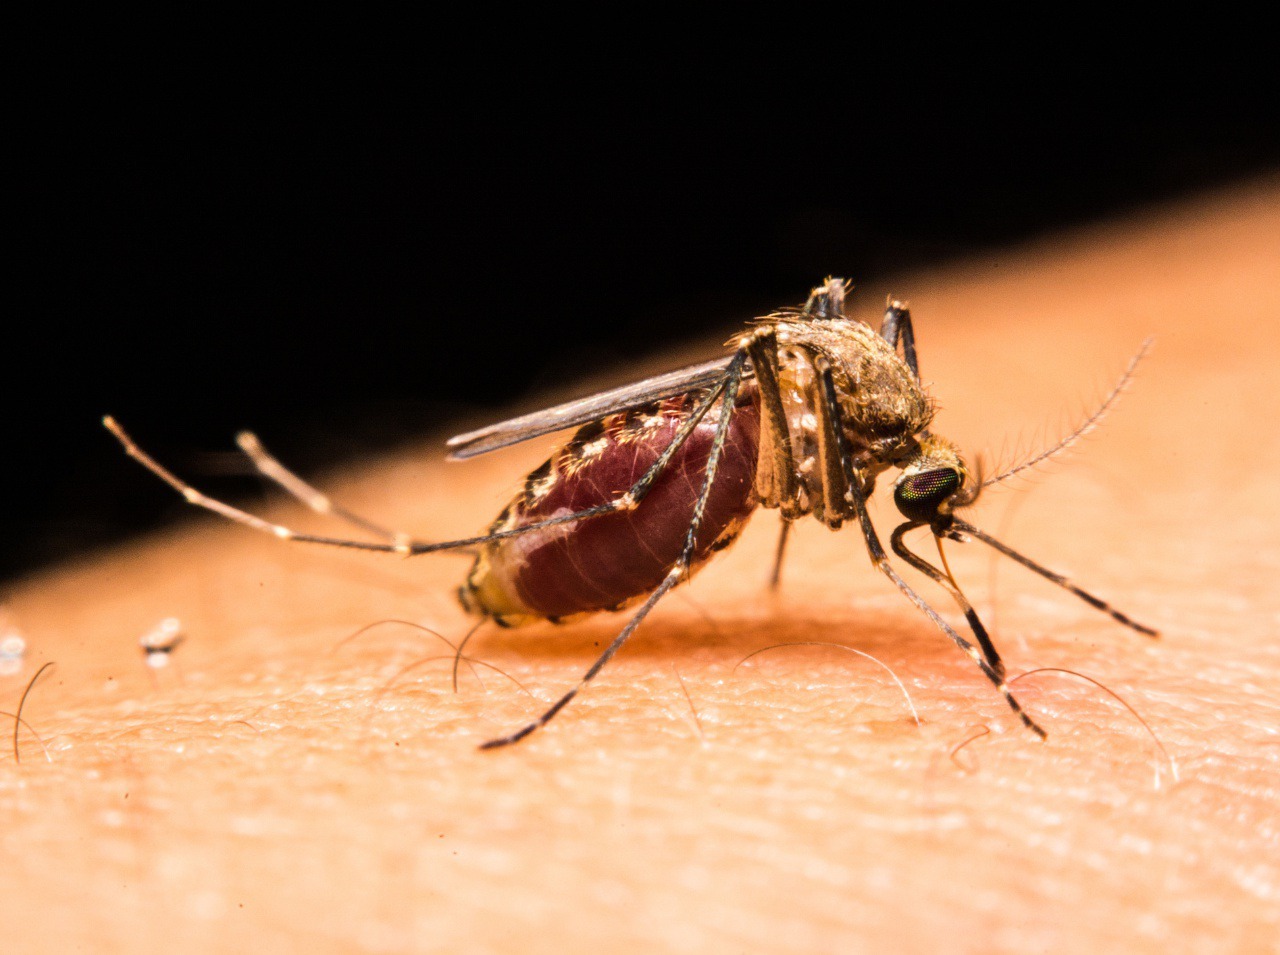 Bojujte proti komárom účinným repelentom!